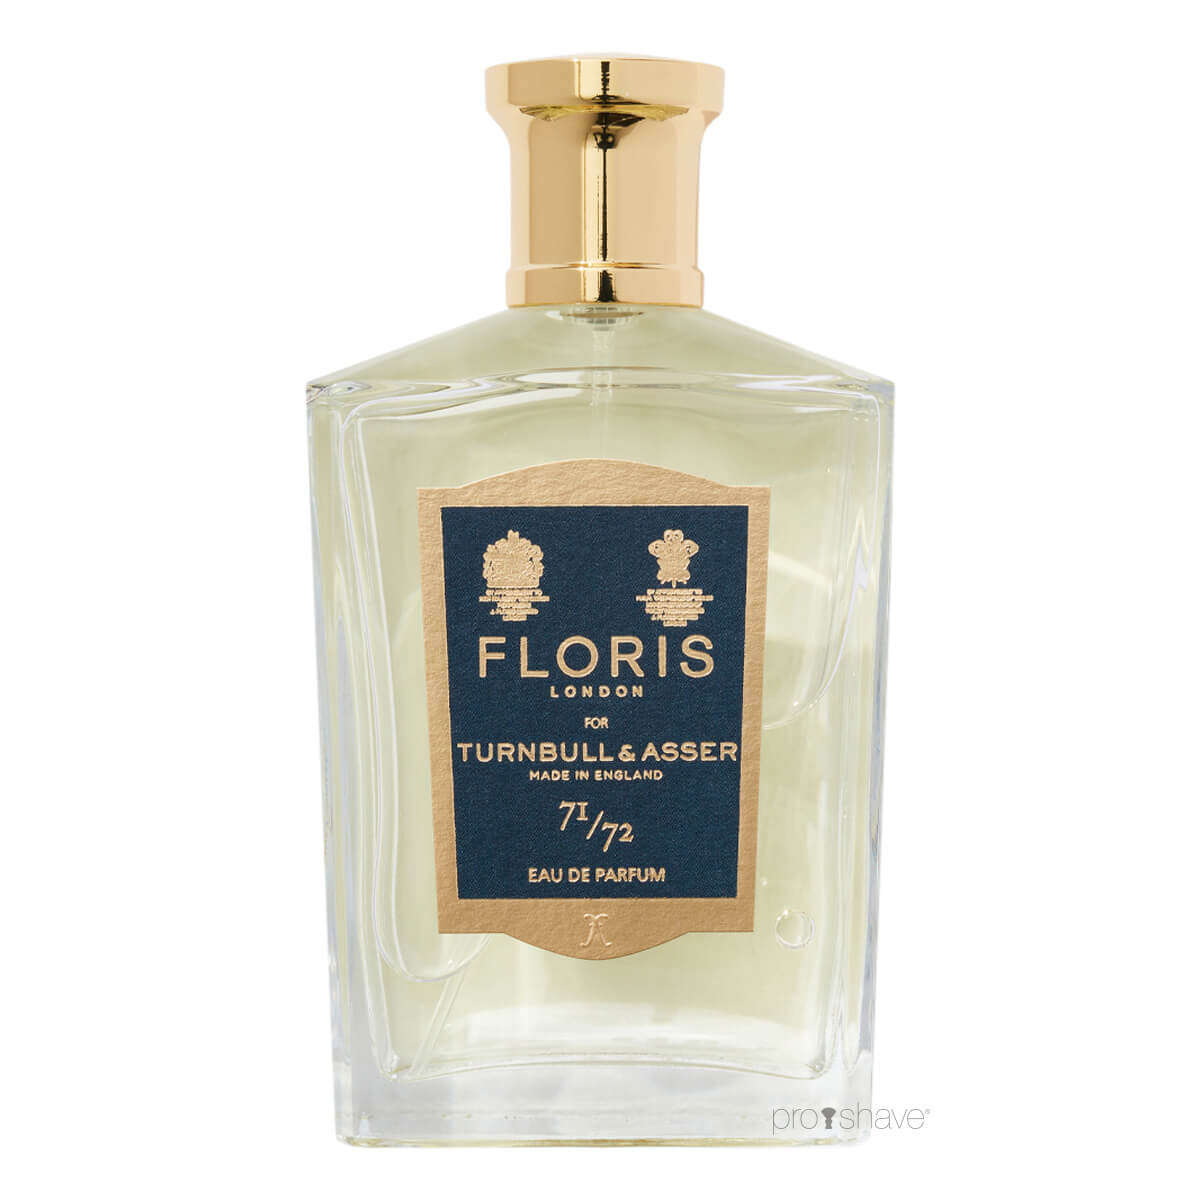 Se Floris x Turnbull & Asser 71/72, Eau de Parfum, 100 ml. hos Proshave